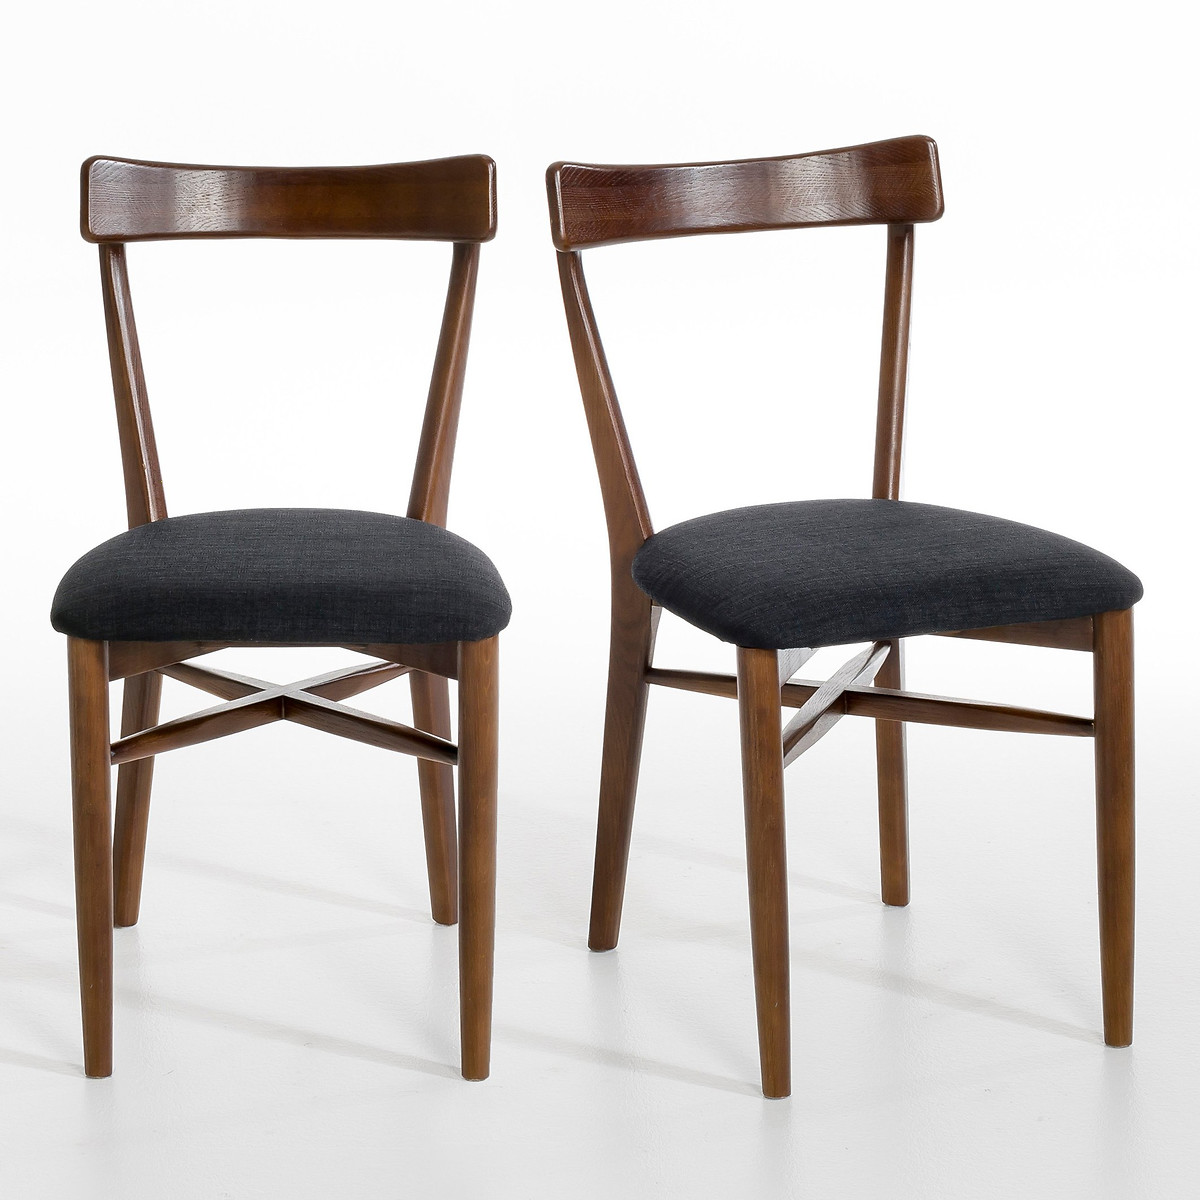 Комплект из 2 стульев, Bree La Redoute единый размер бежевый комплект из 2 стульев из бука и металла штабелируемых loumi единый размер бежевый